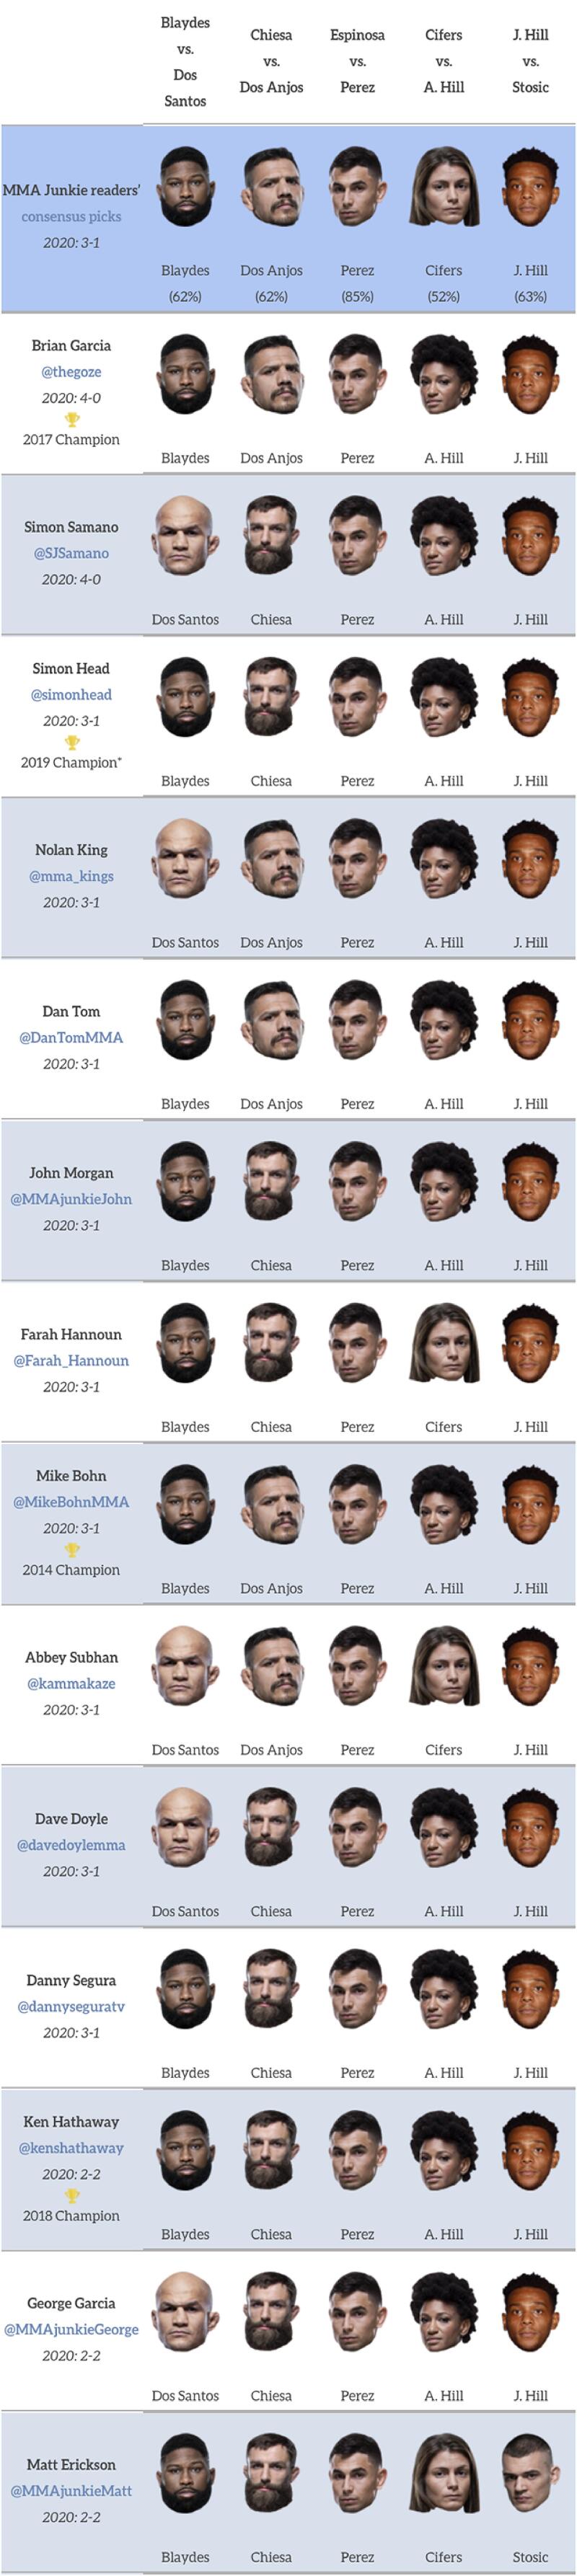 UFC 롤리 : 블레이즈 vs 도스 산토스 미디어 예상 및 배당률